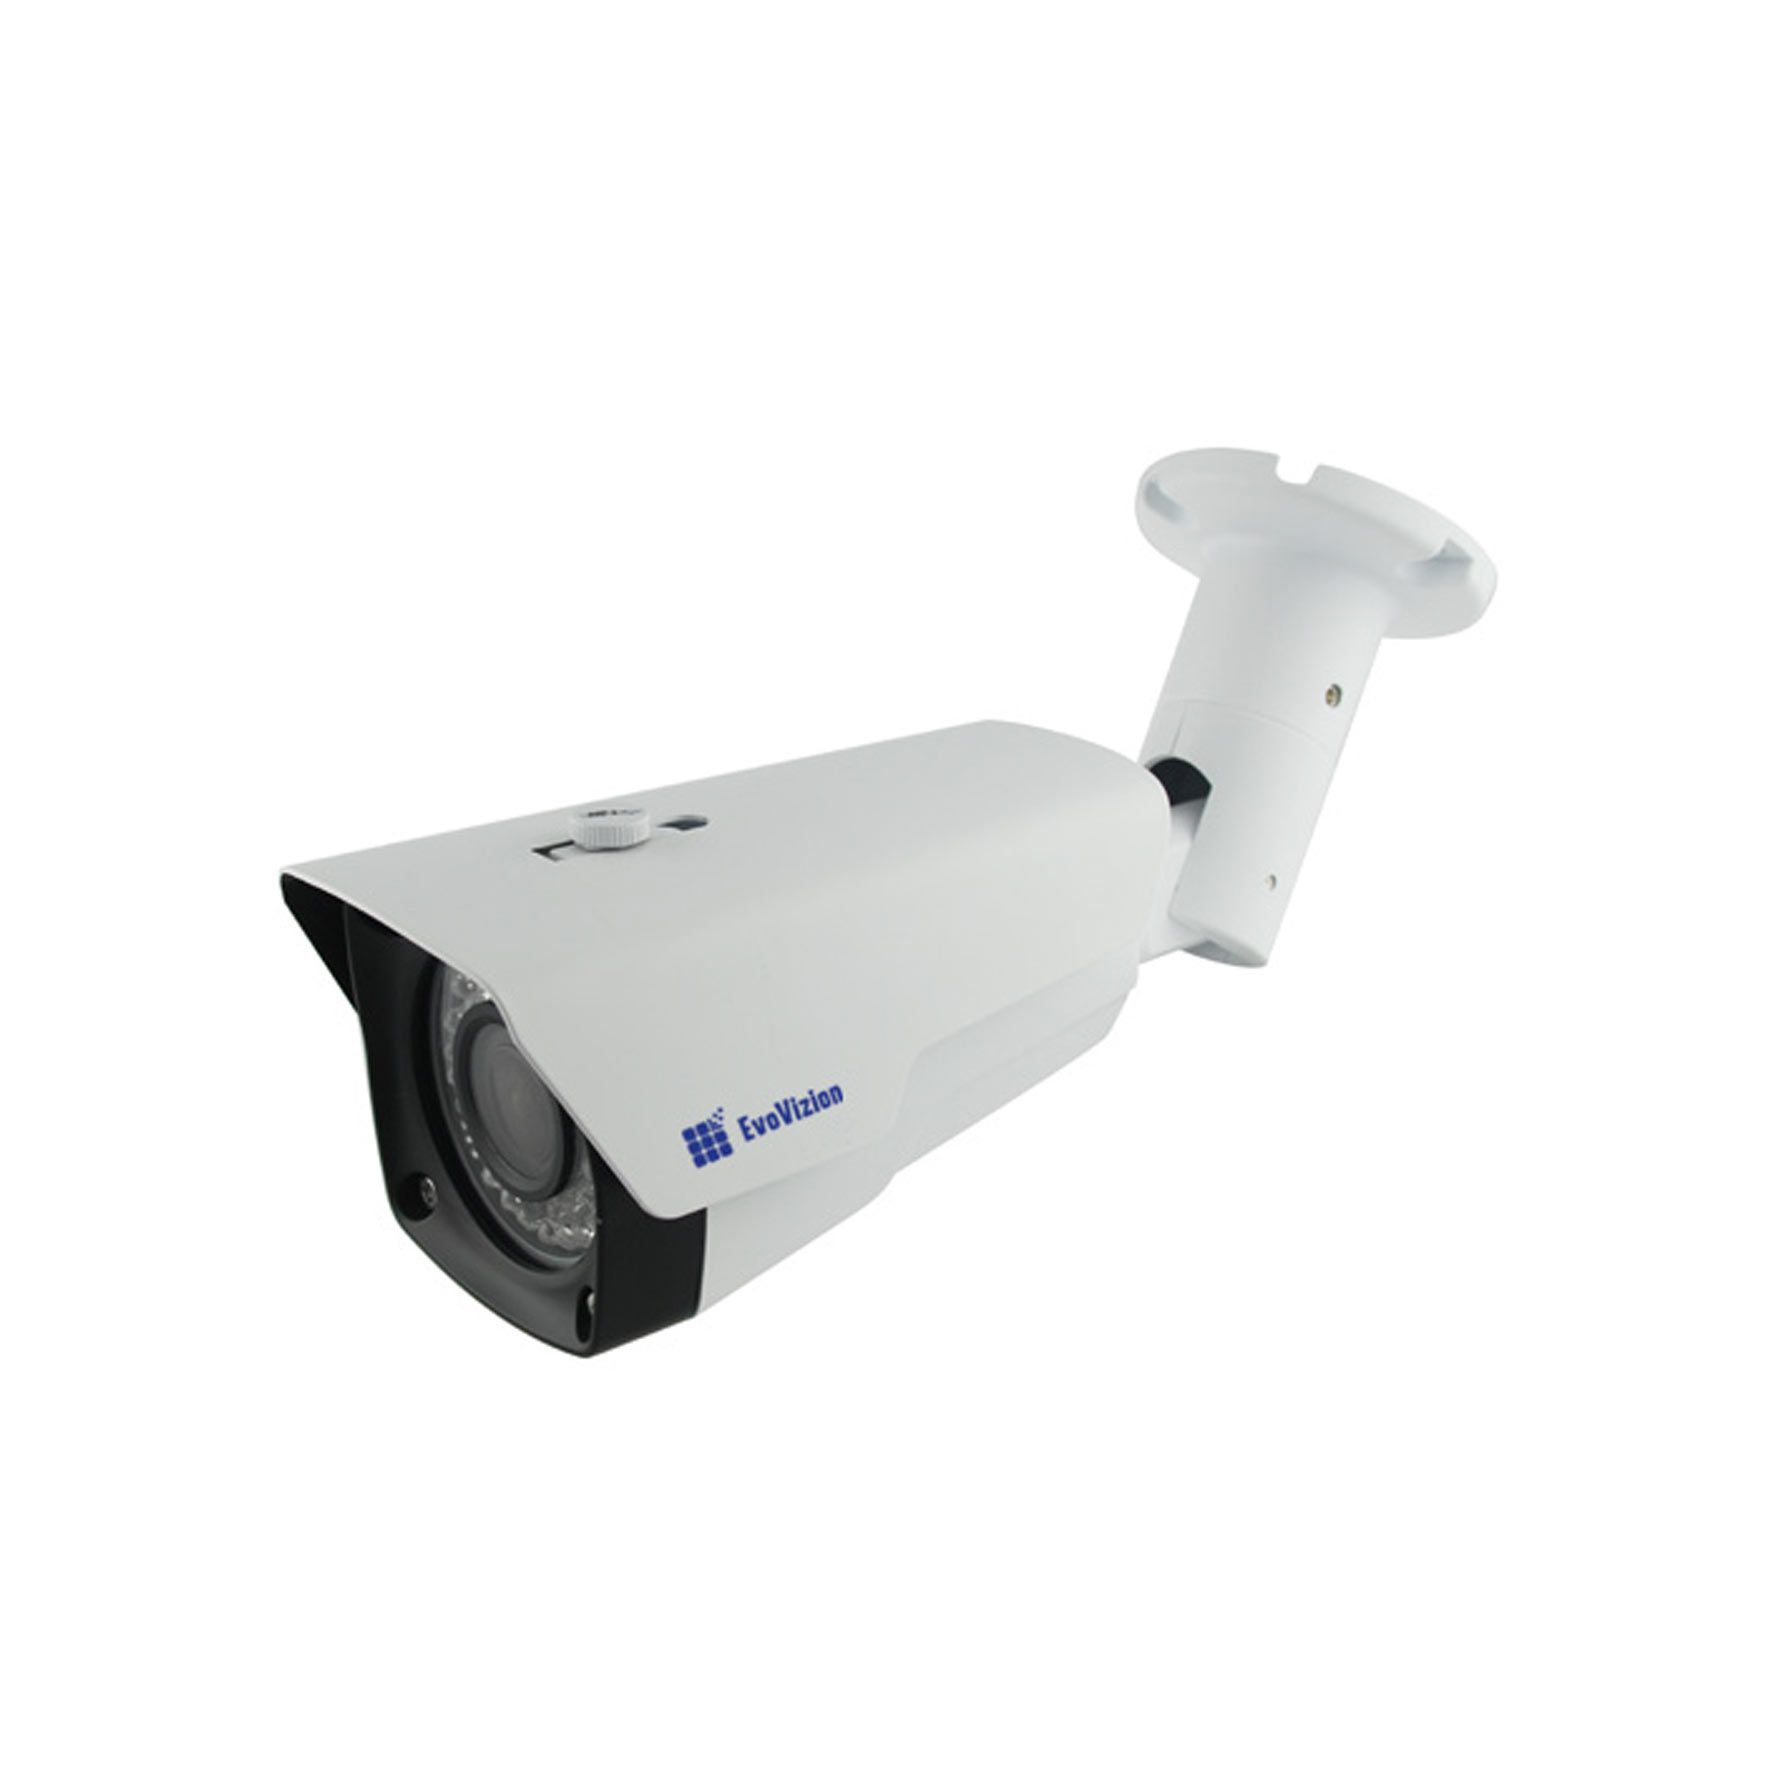 Цилиндрическая камера EvoVizion AHD-915-100VF v 2.0